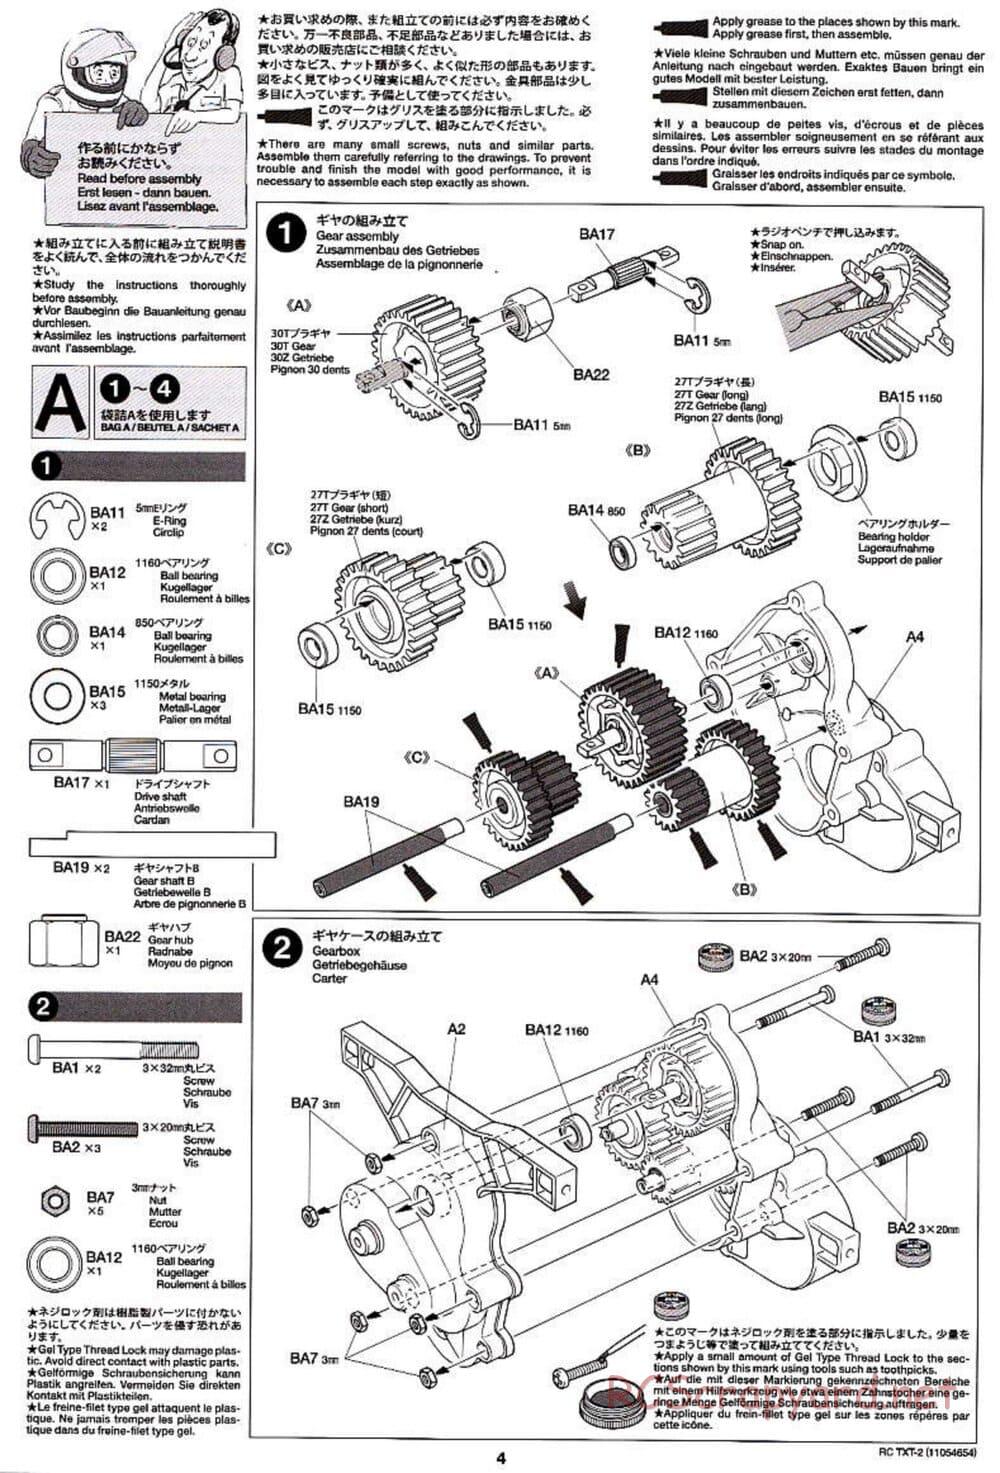 Tamiya - TXT-2 Chassis - Manual - Page 4